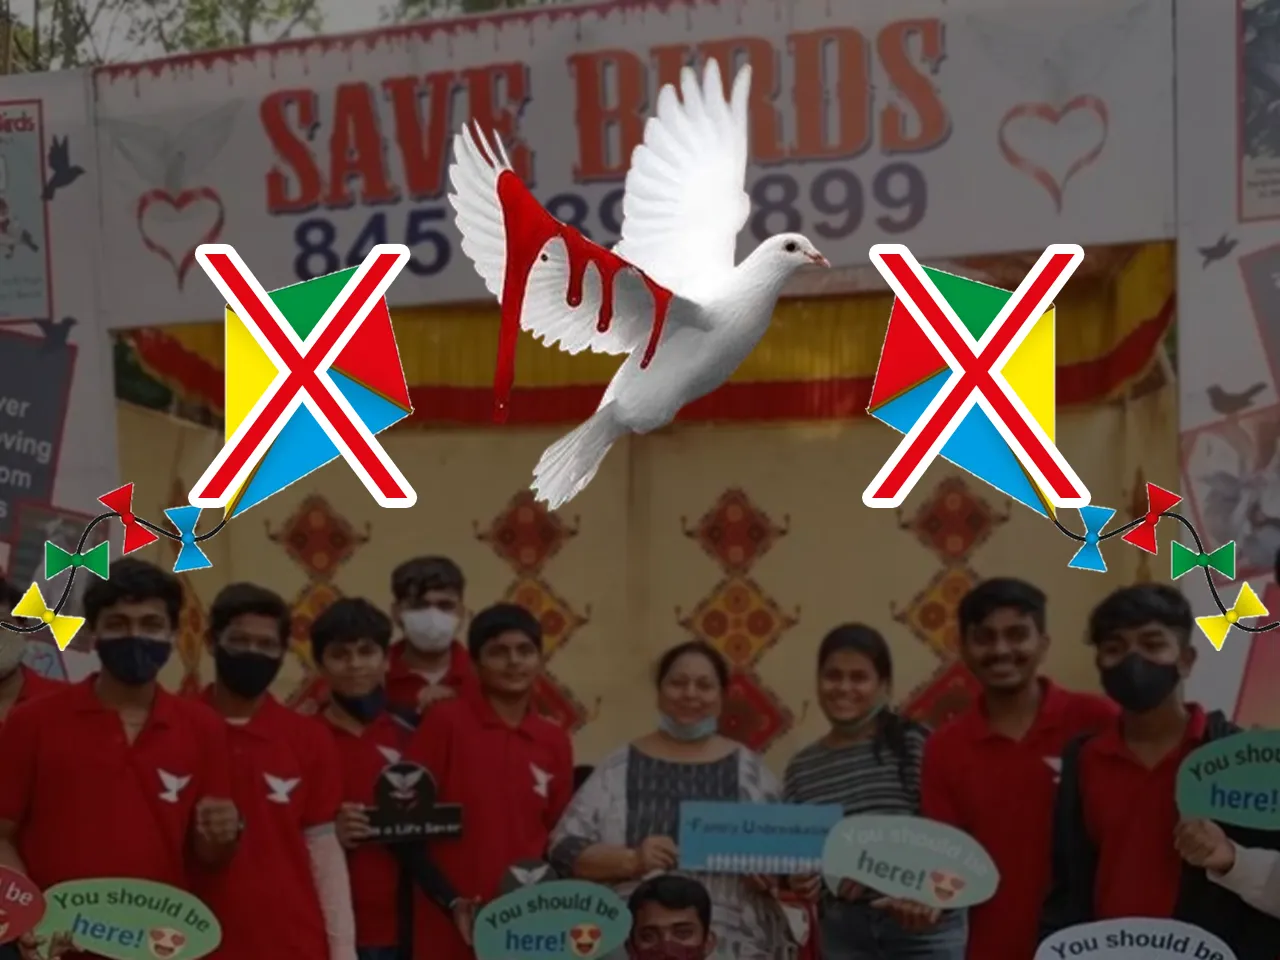 save birds ngo